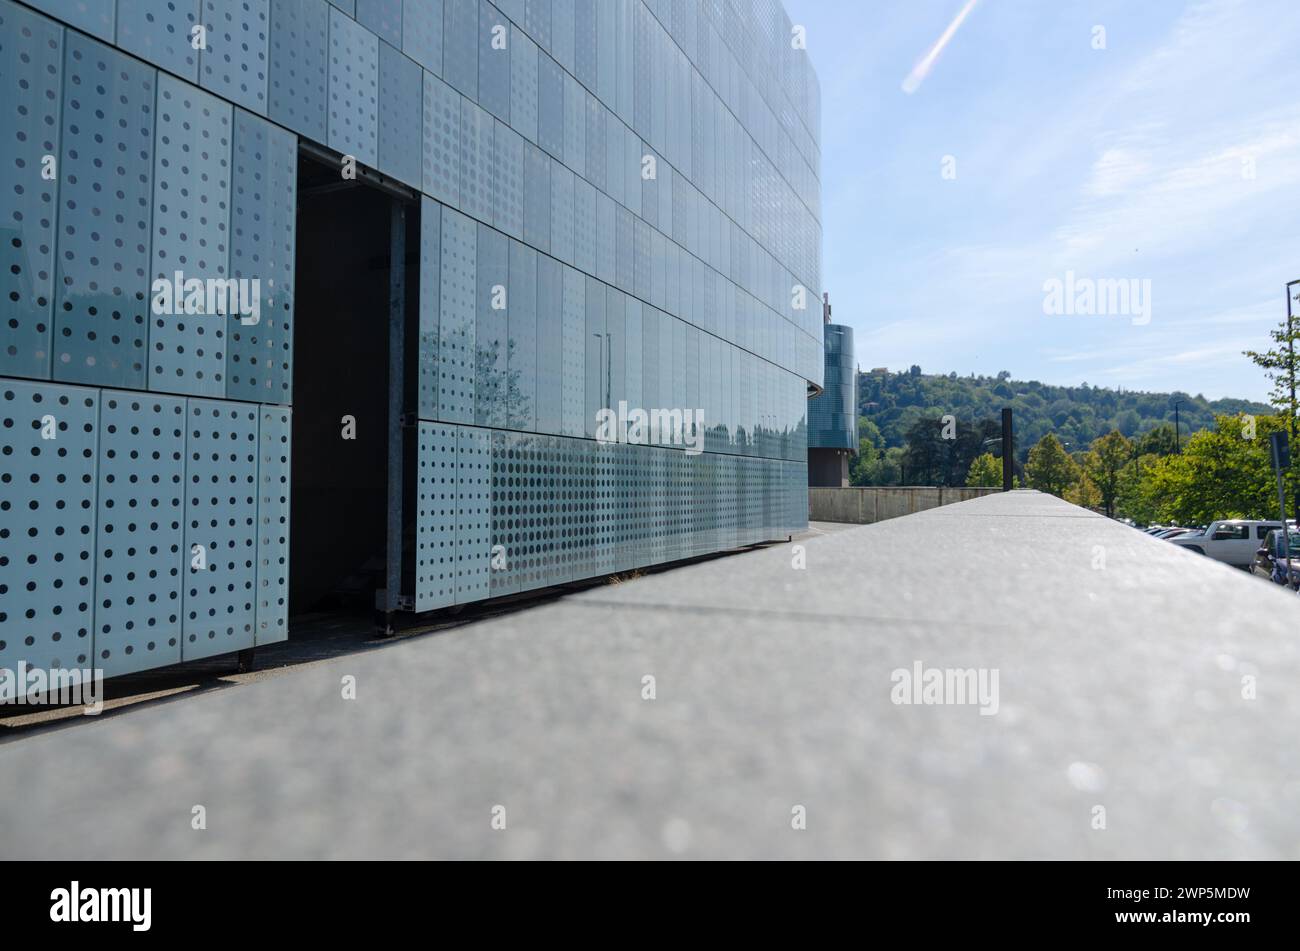 Façade de bâtiment moderne, avec un système de protection solaire innovant conçu sur une façade en verre orientée plein sud. bâtiment semi-circulaire, avec des lignes ondulées de mol Banque D'Images